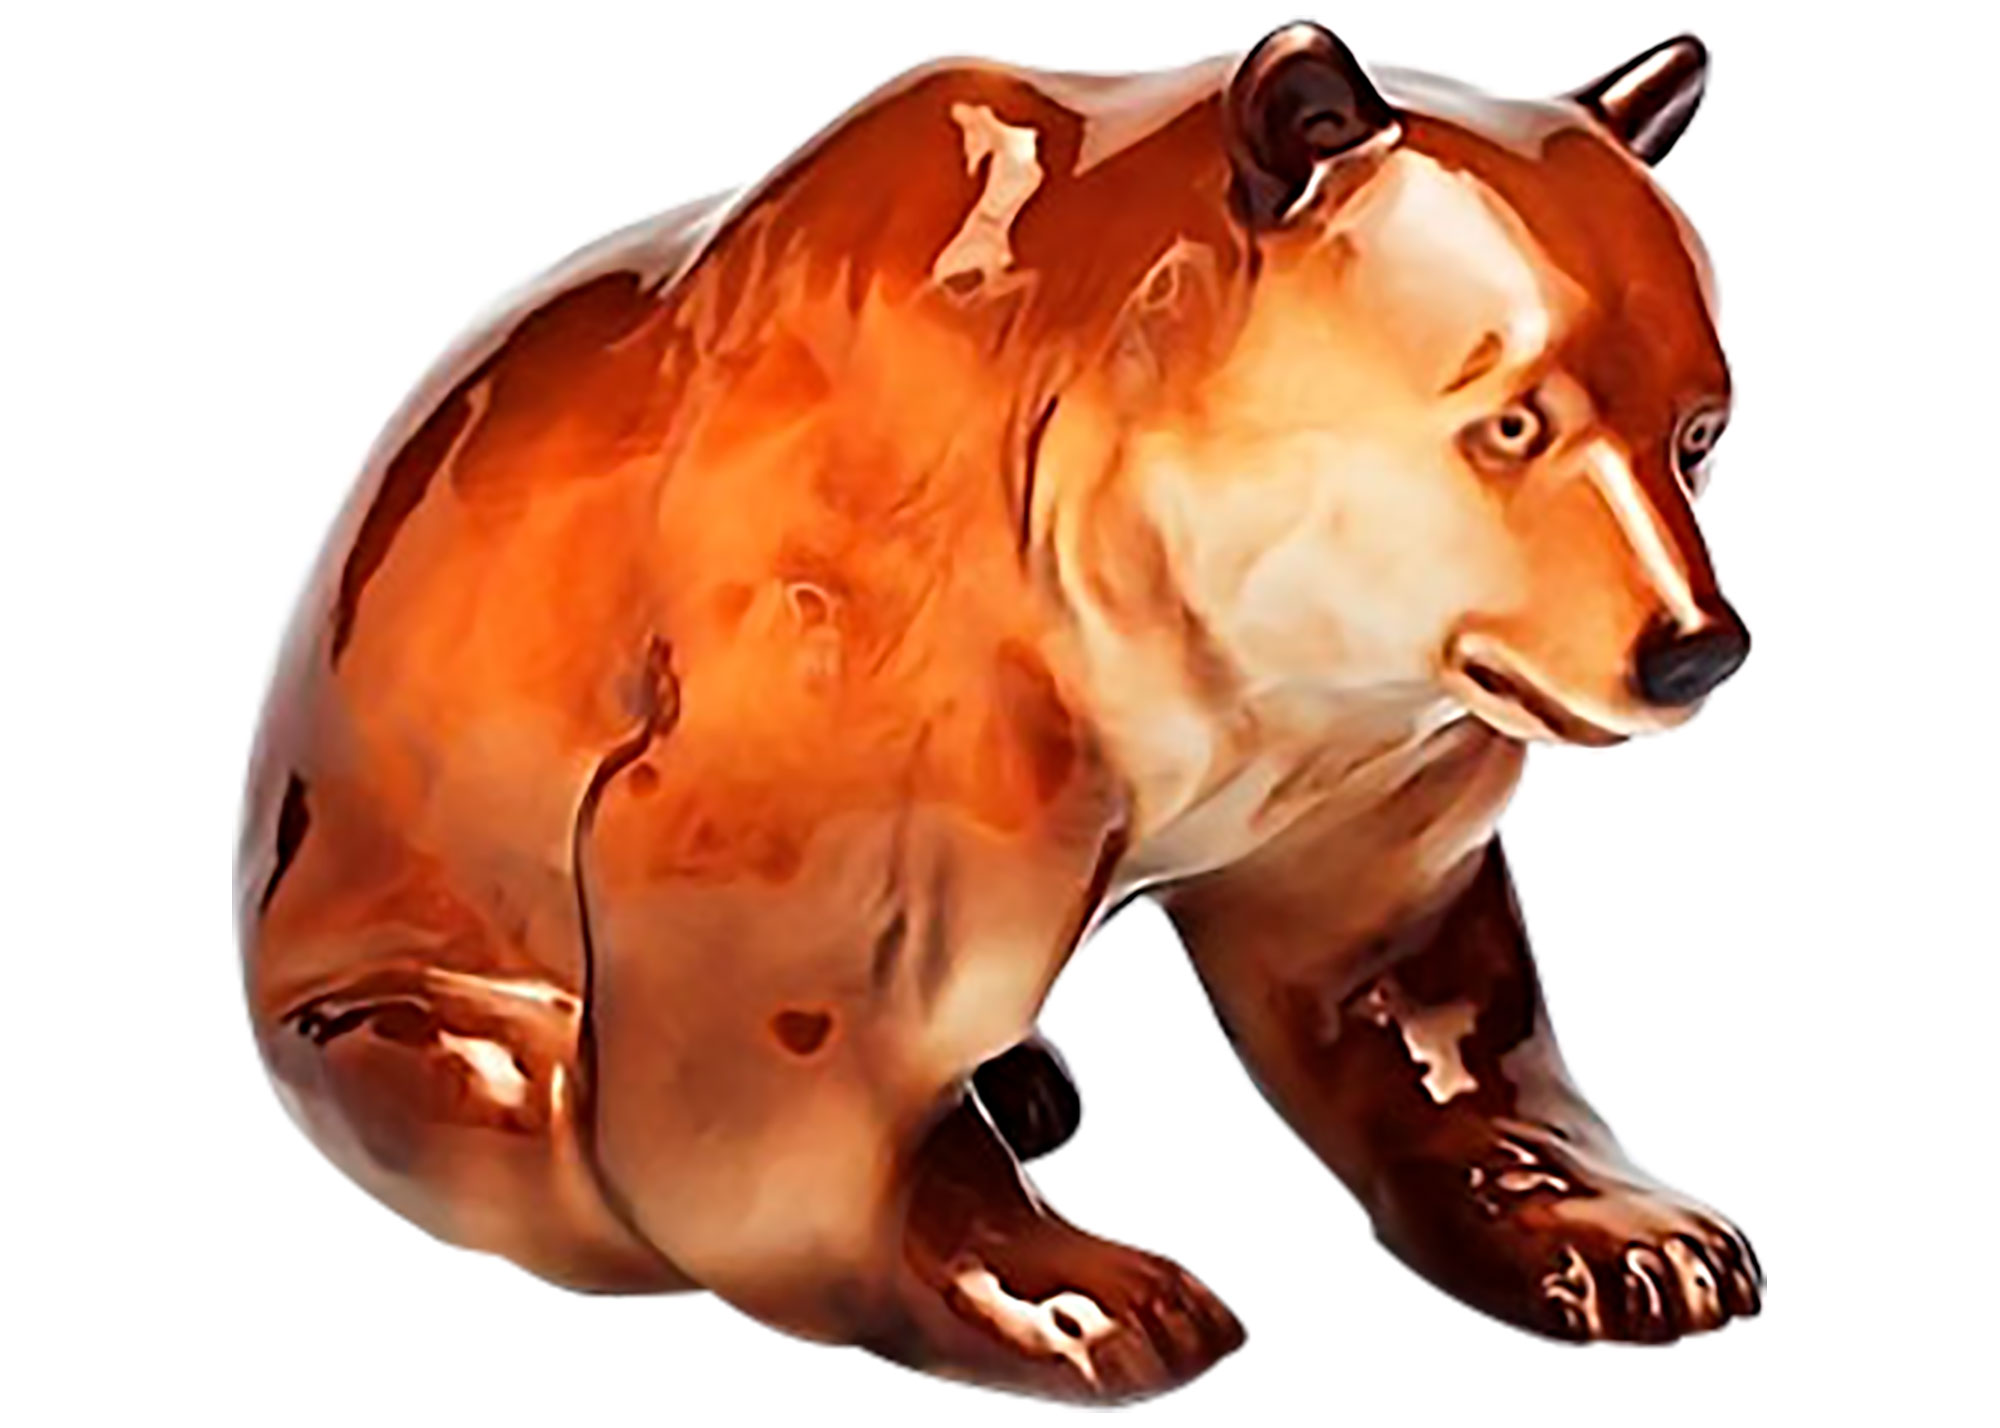 Buy Фарфоровая статуэтка "Медведь бурый (гризли)" at GoldenCockerel.com